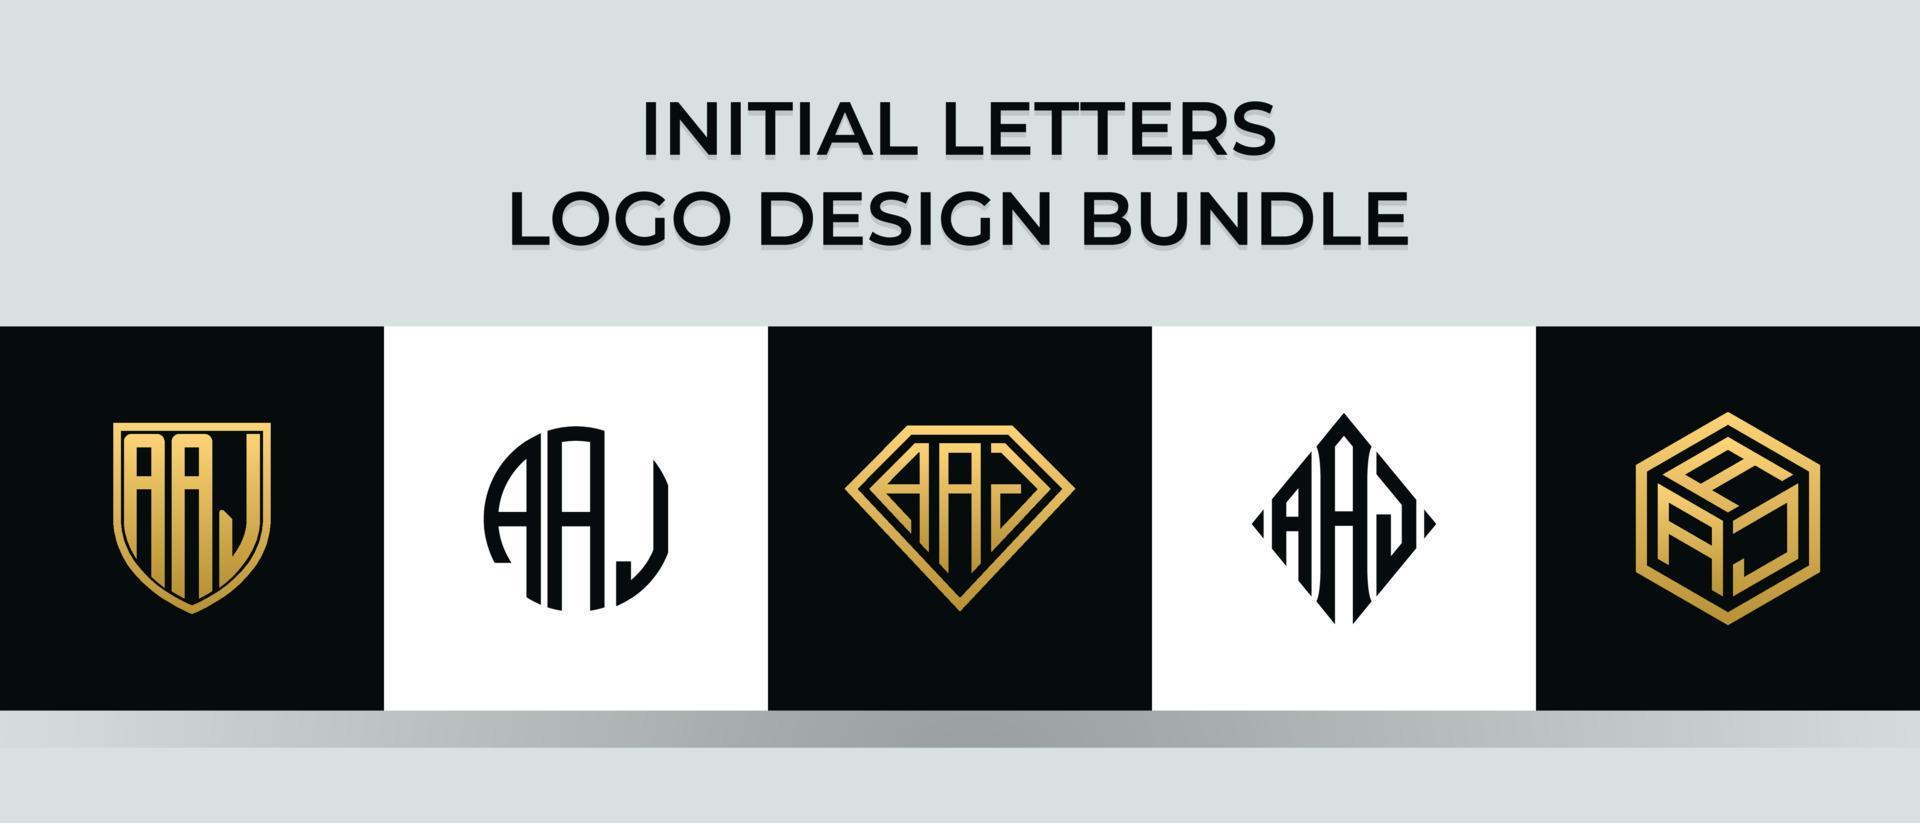 lettere iniziali aaj logo design bundle vettore